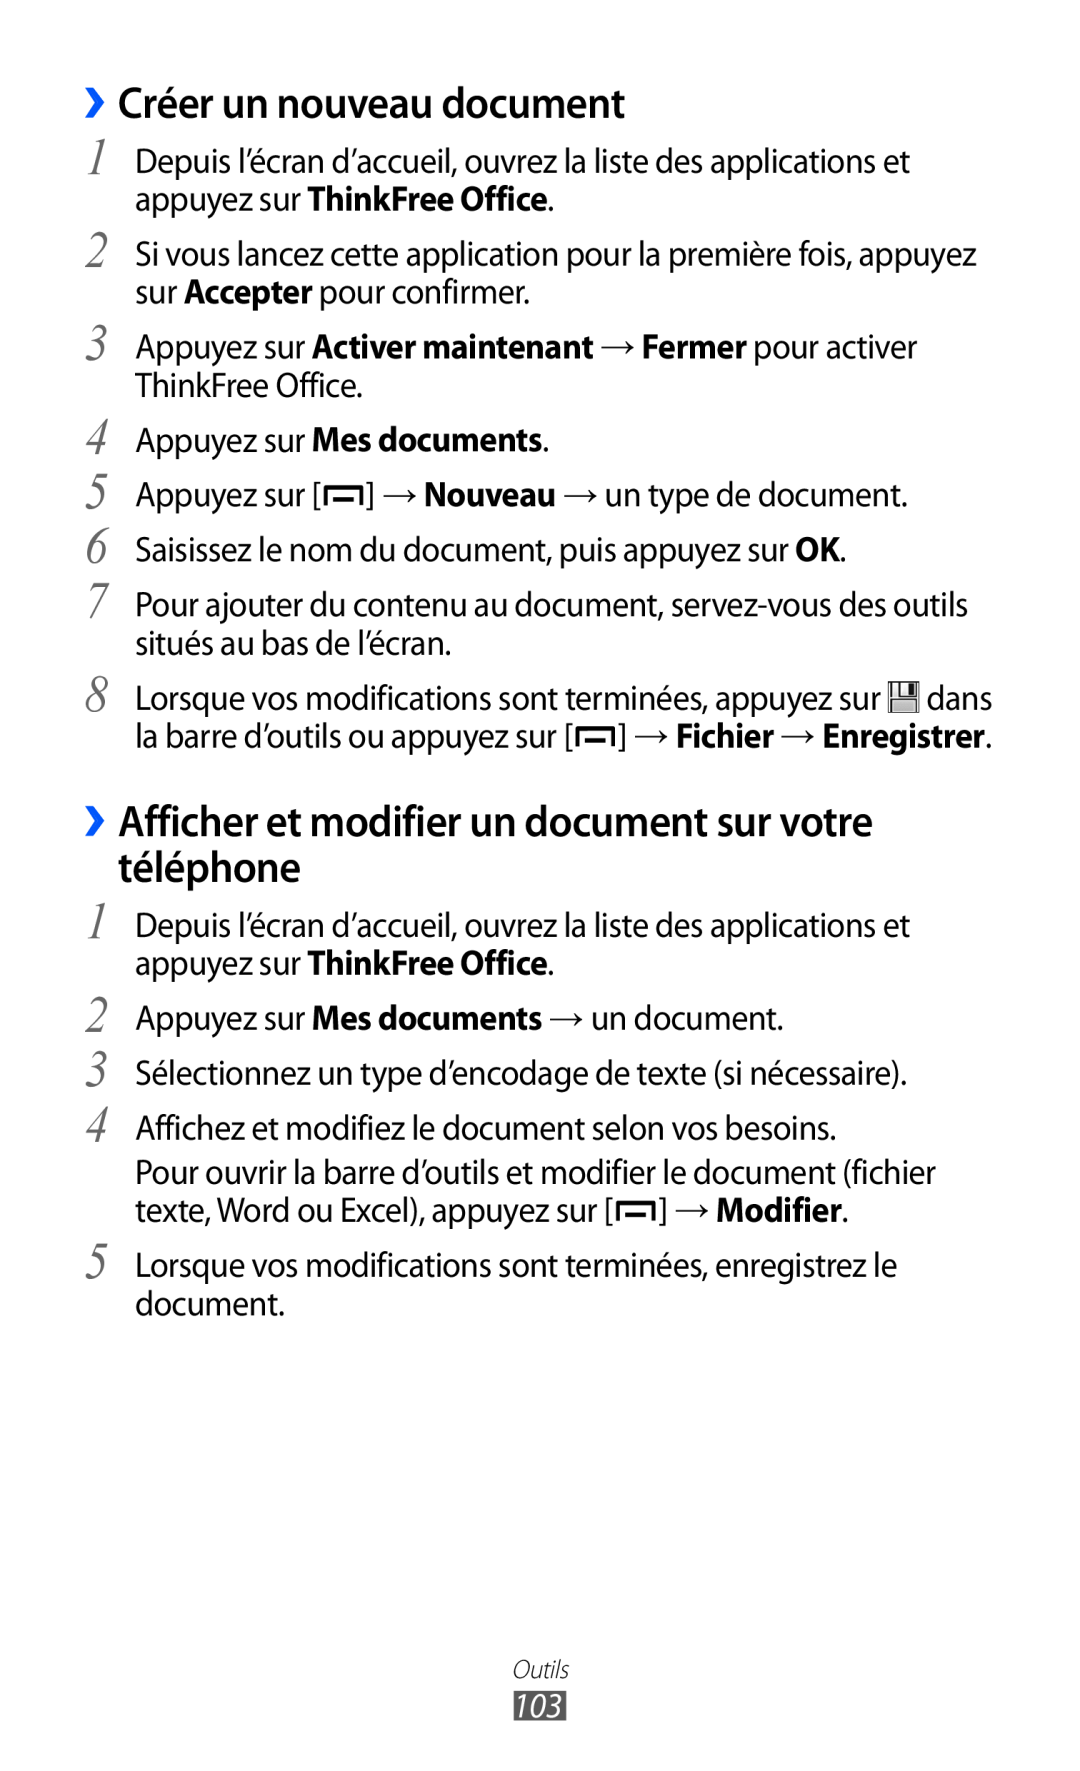 Samsung GT-B5510WSAXEF, GT-B5510CAANRJ ››Créer un nouveau document, ››Afficher et modifier un document sur votre téléphone 